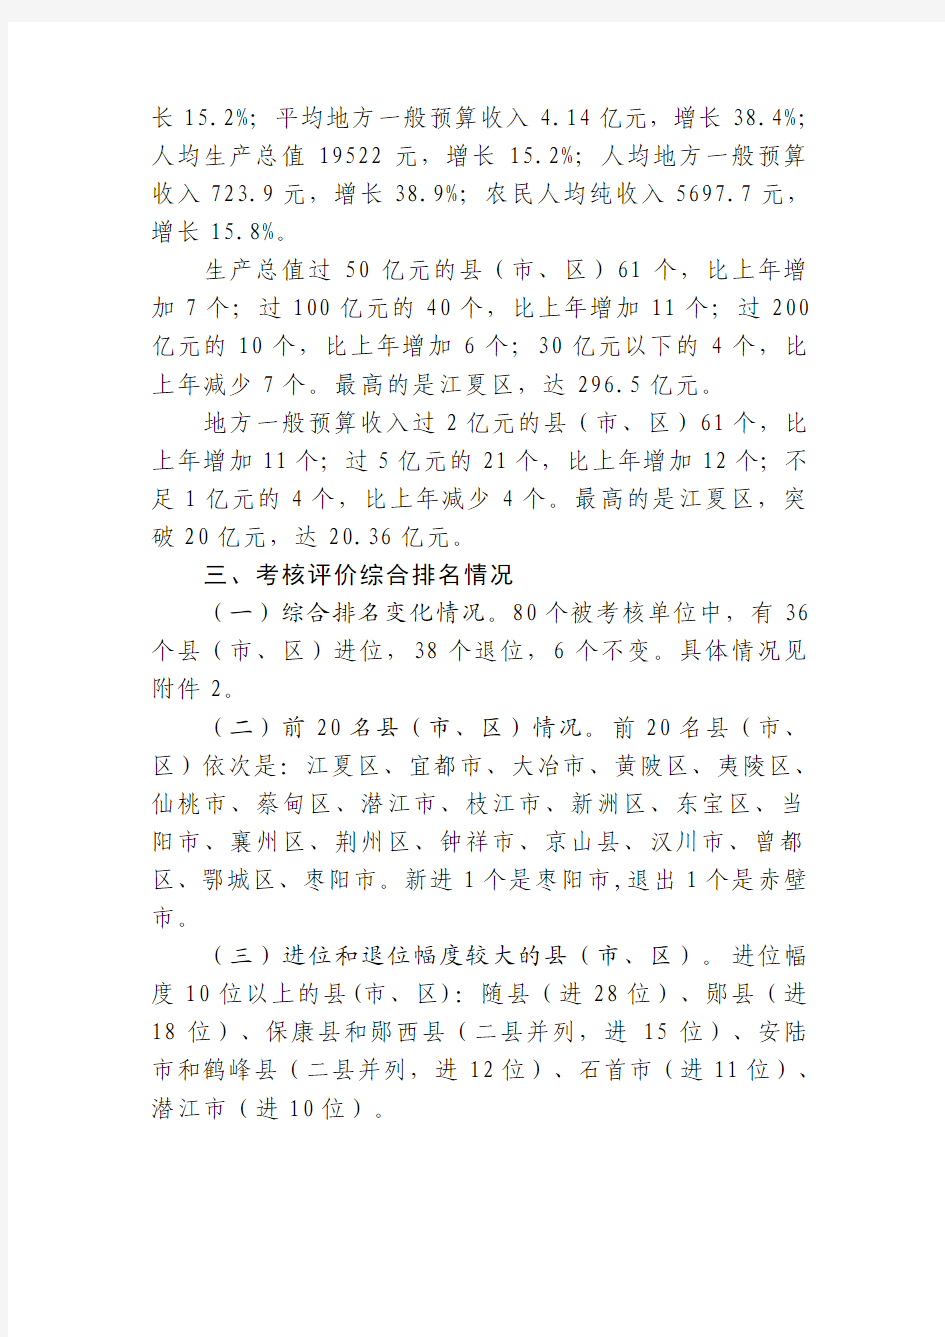 2010年湖北省县域经济发展考核评价报告